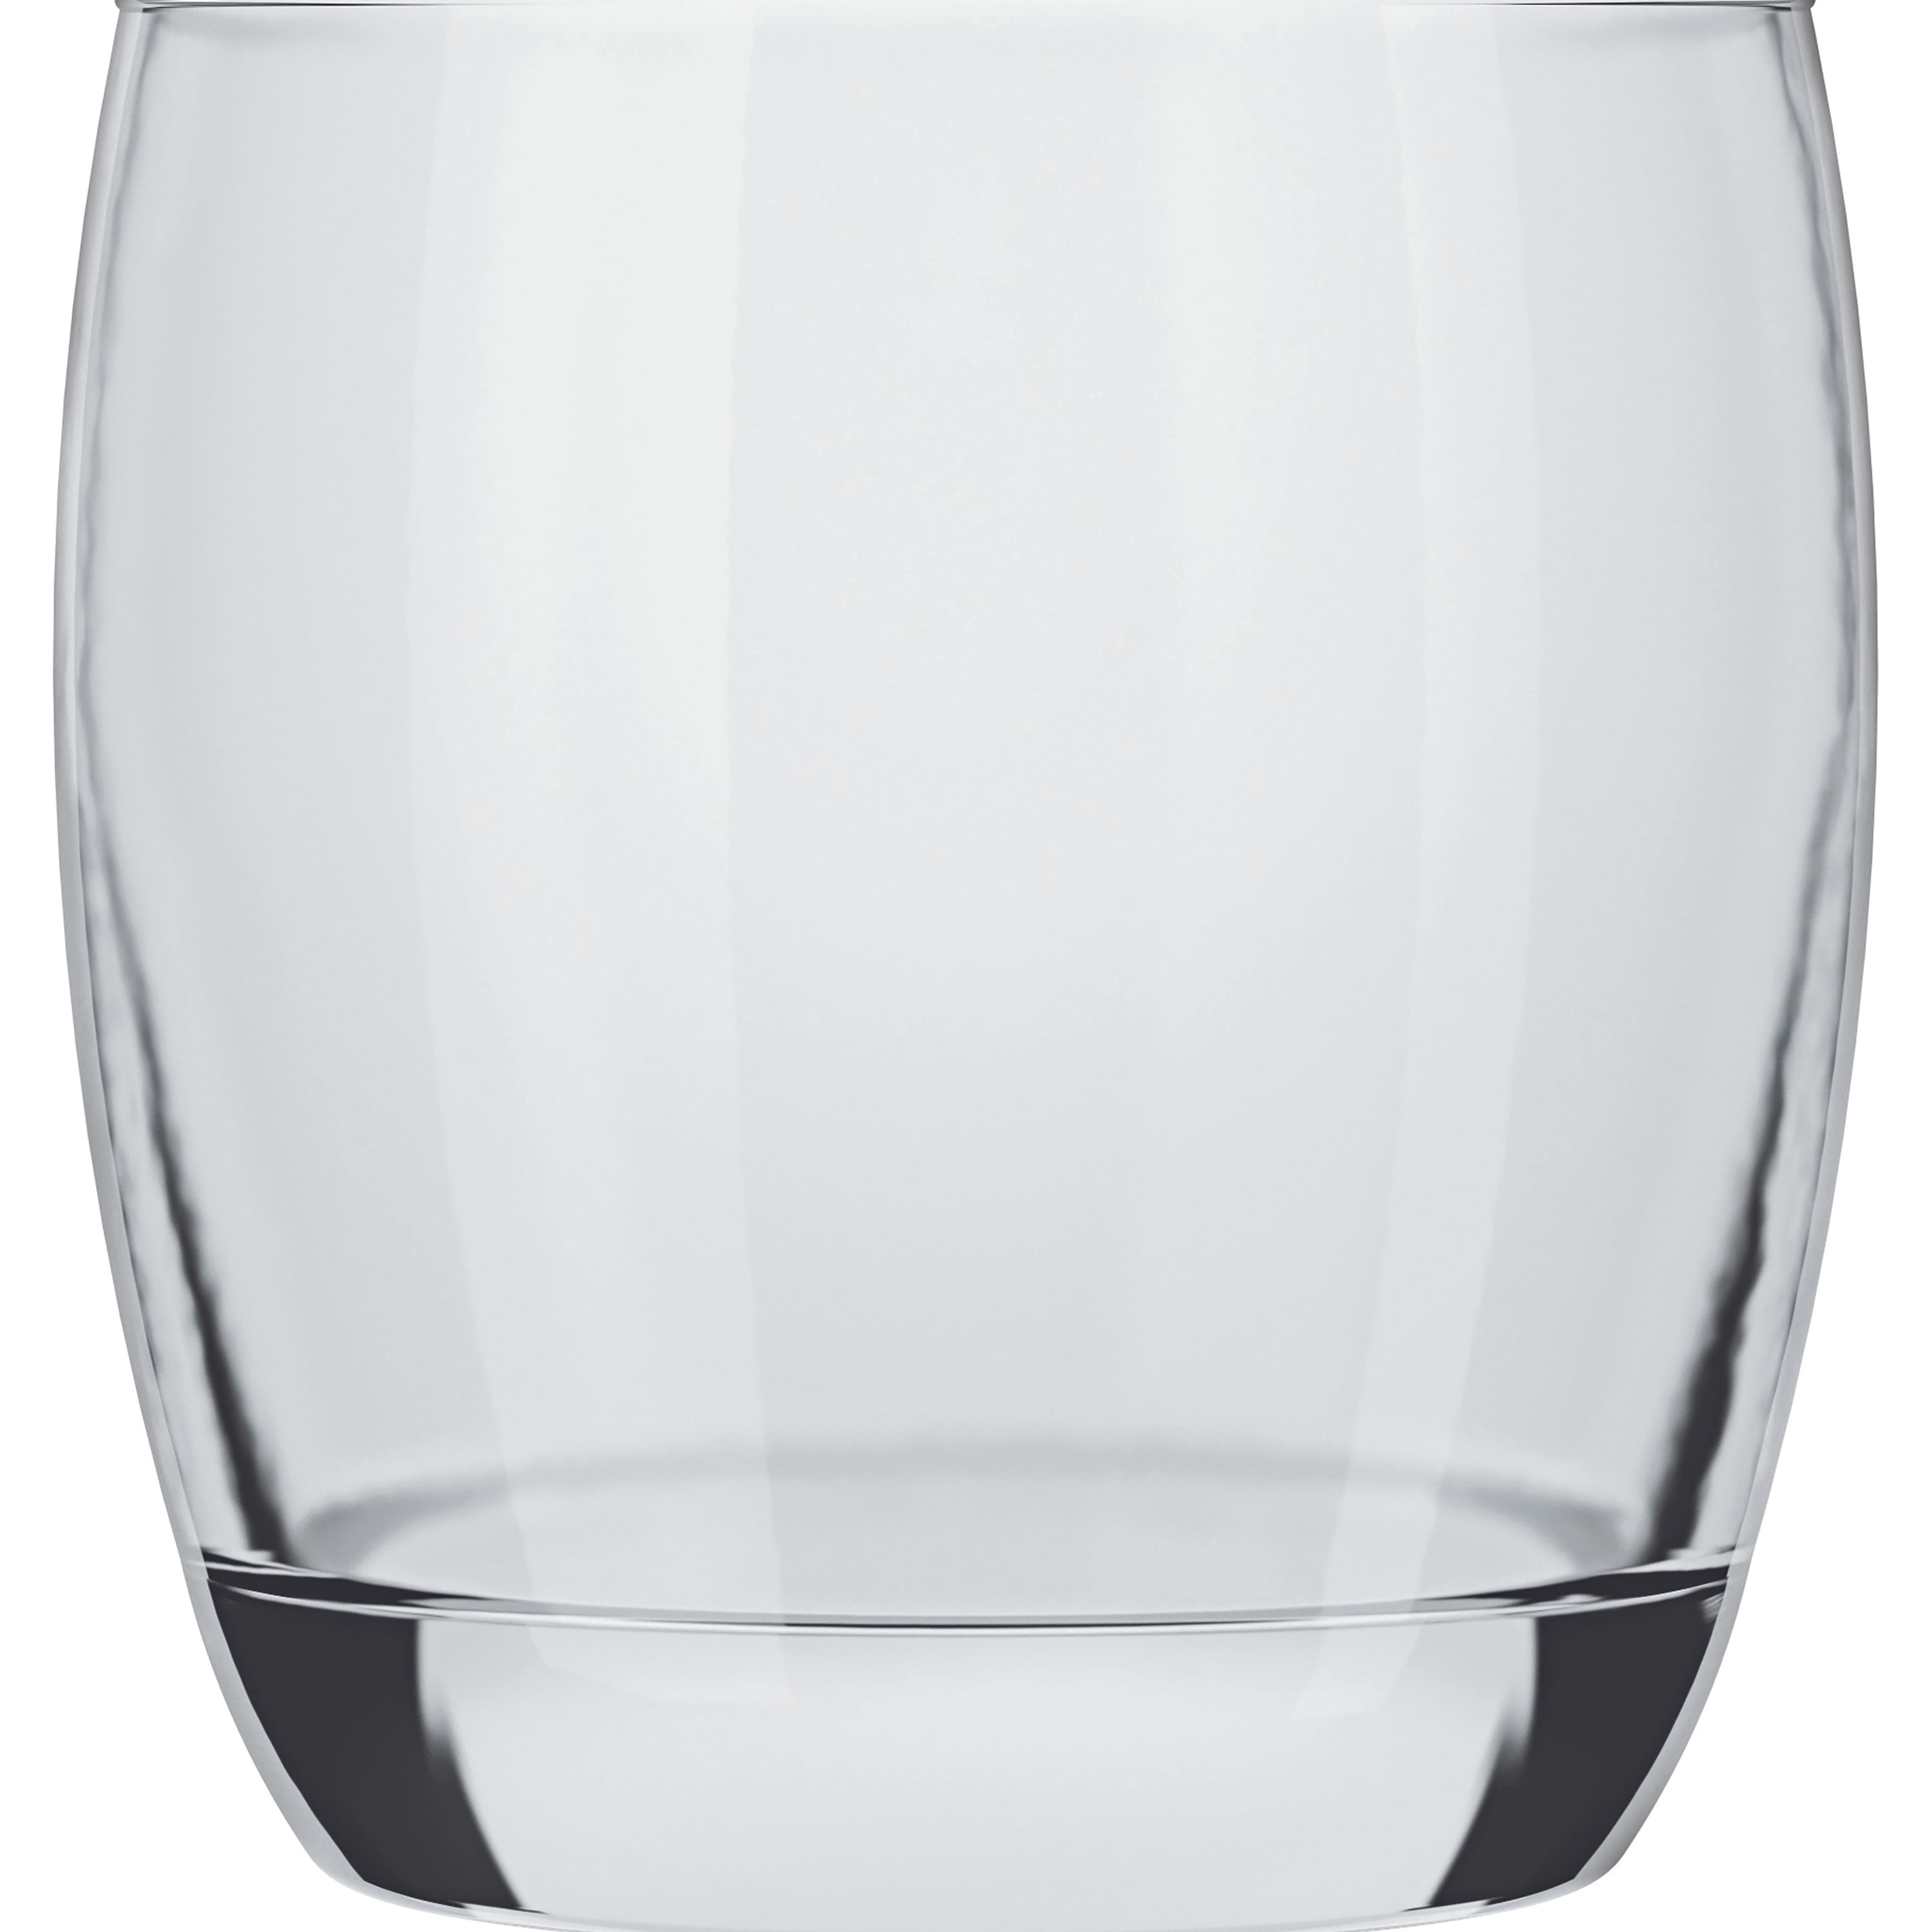 Vaso de vidrio alto 11.8 onzas │Crisa - Jopco Equipos y Productos